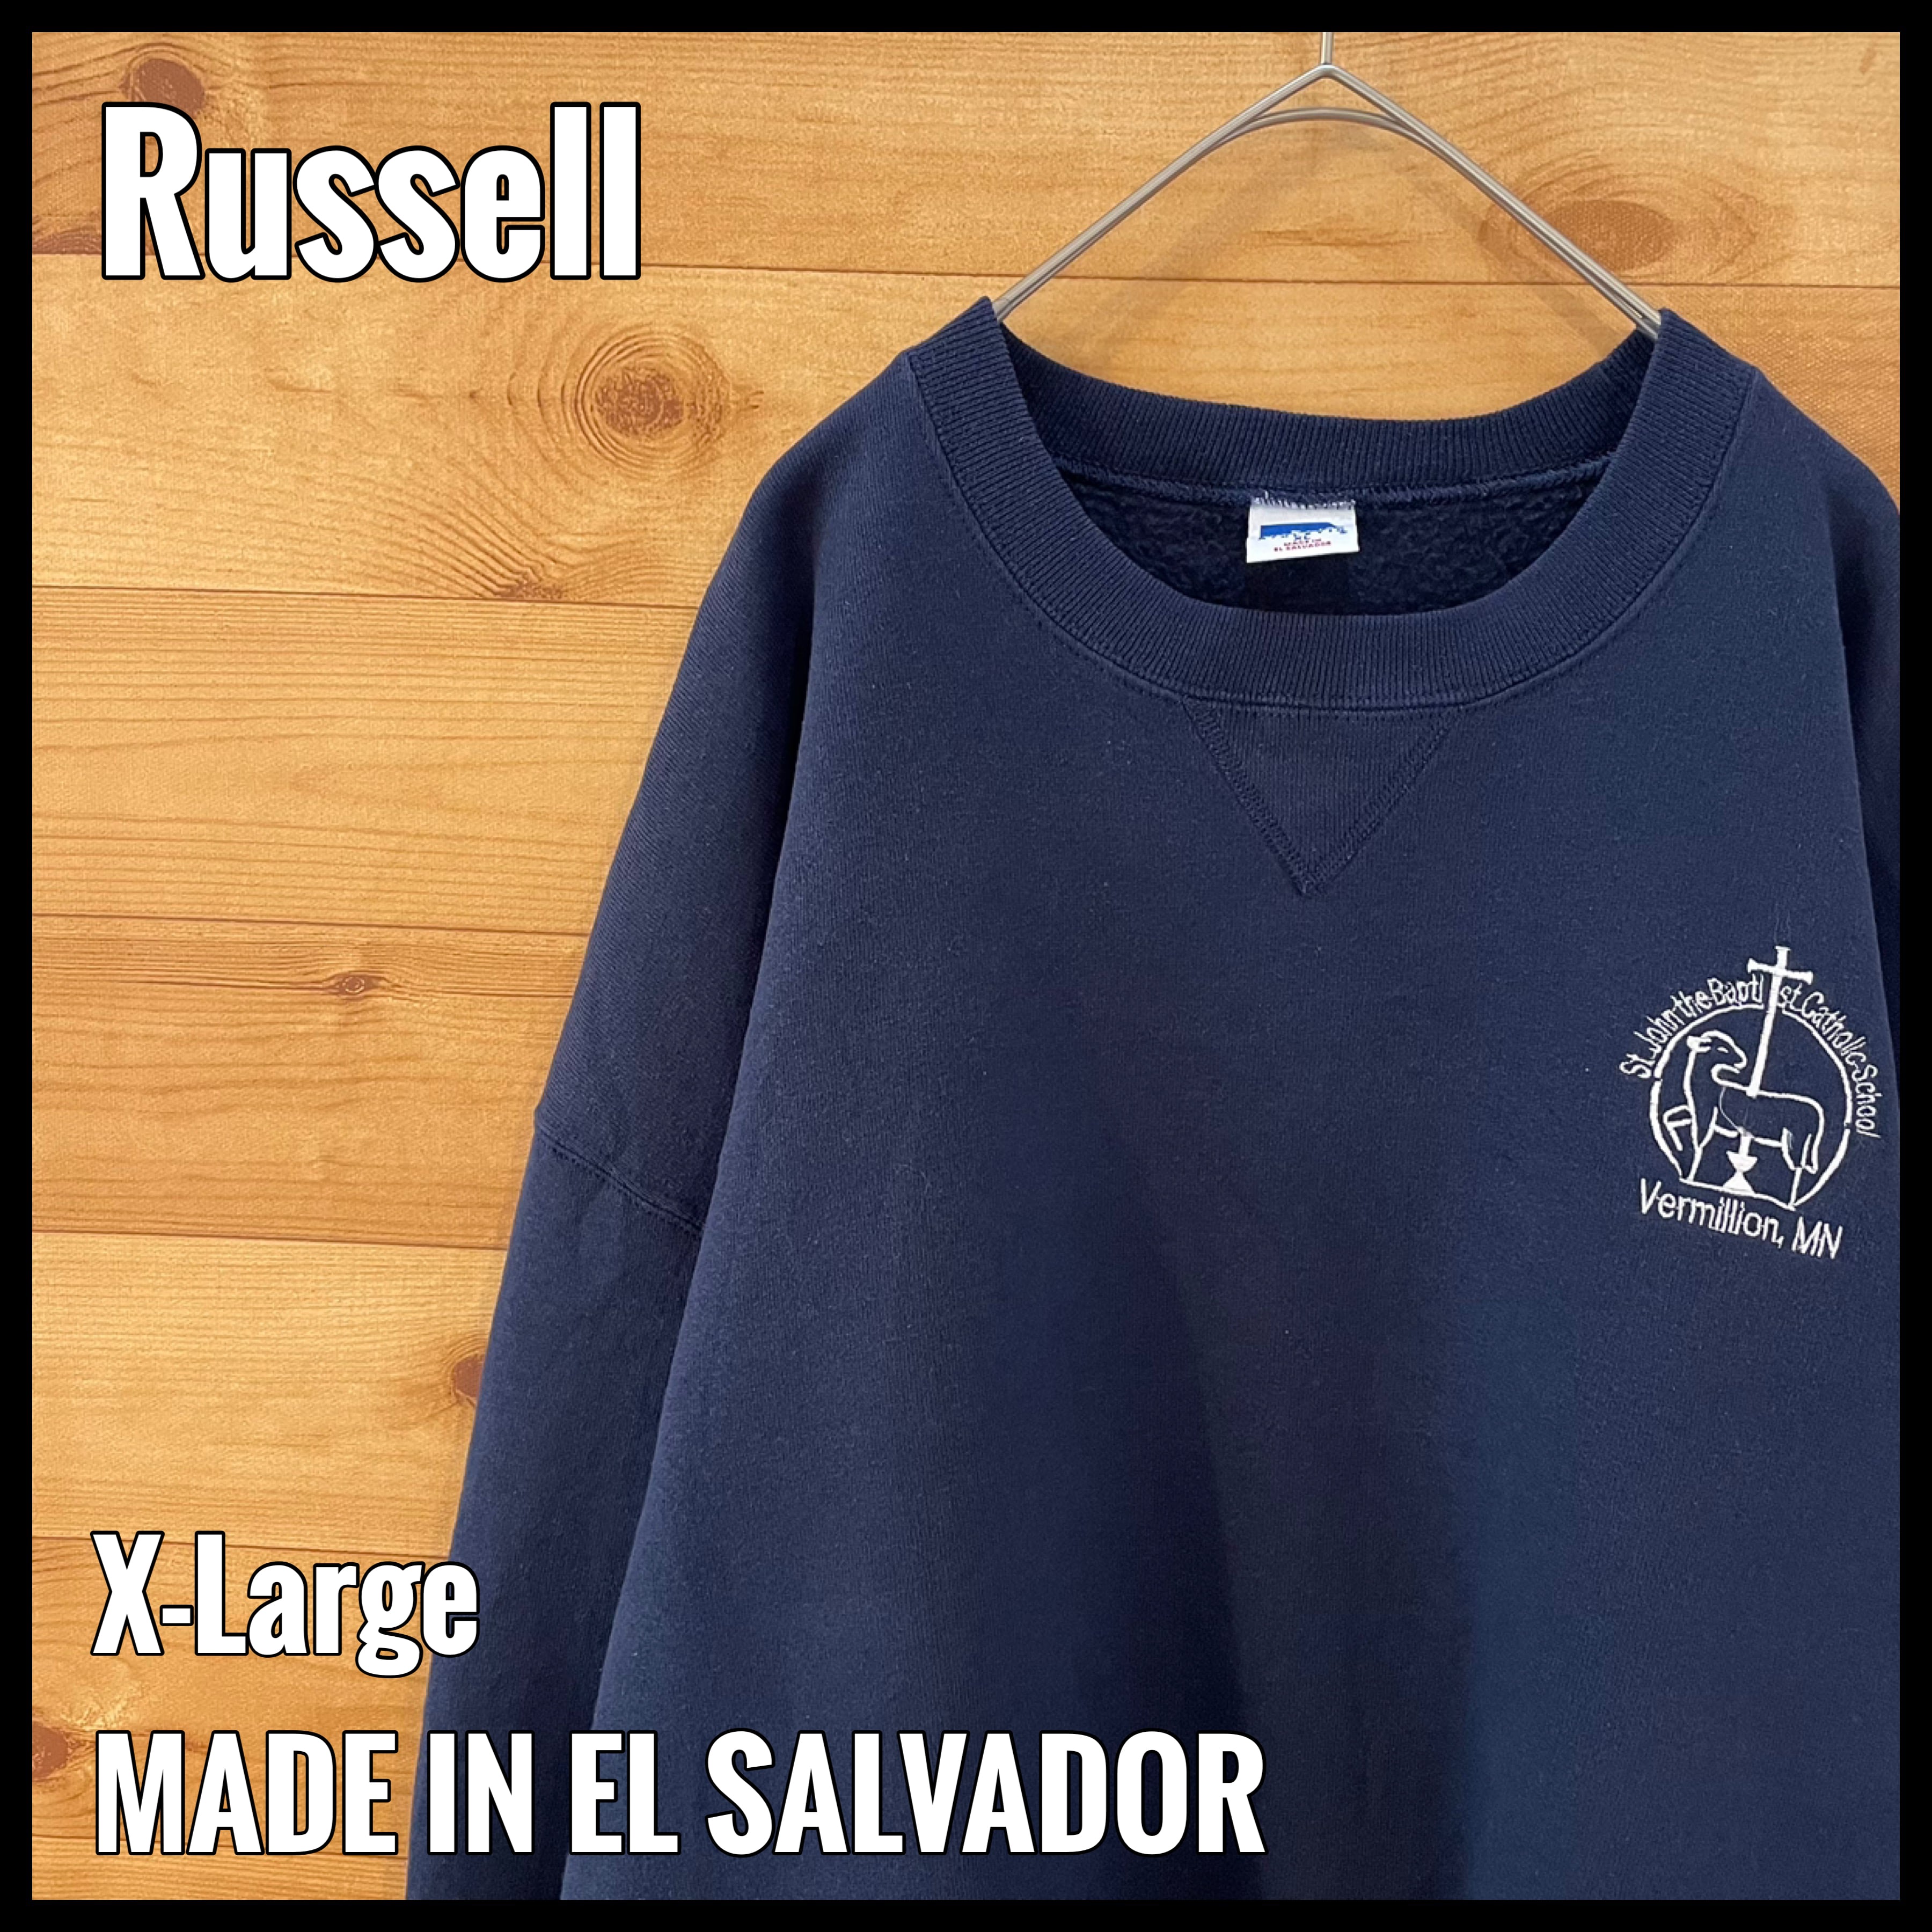 Russell】カトリックスクール 刺繍ロゴ トレーナー スウェット XL